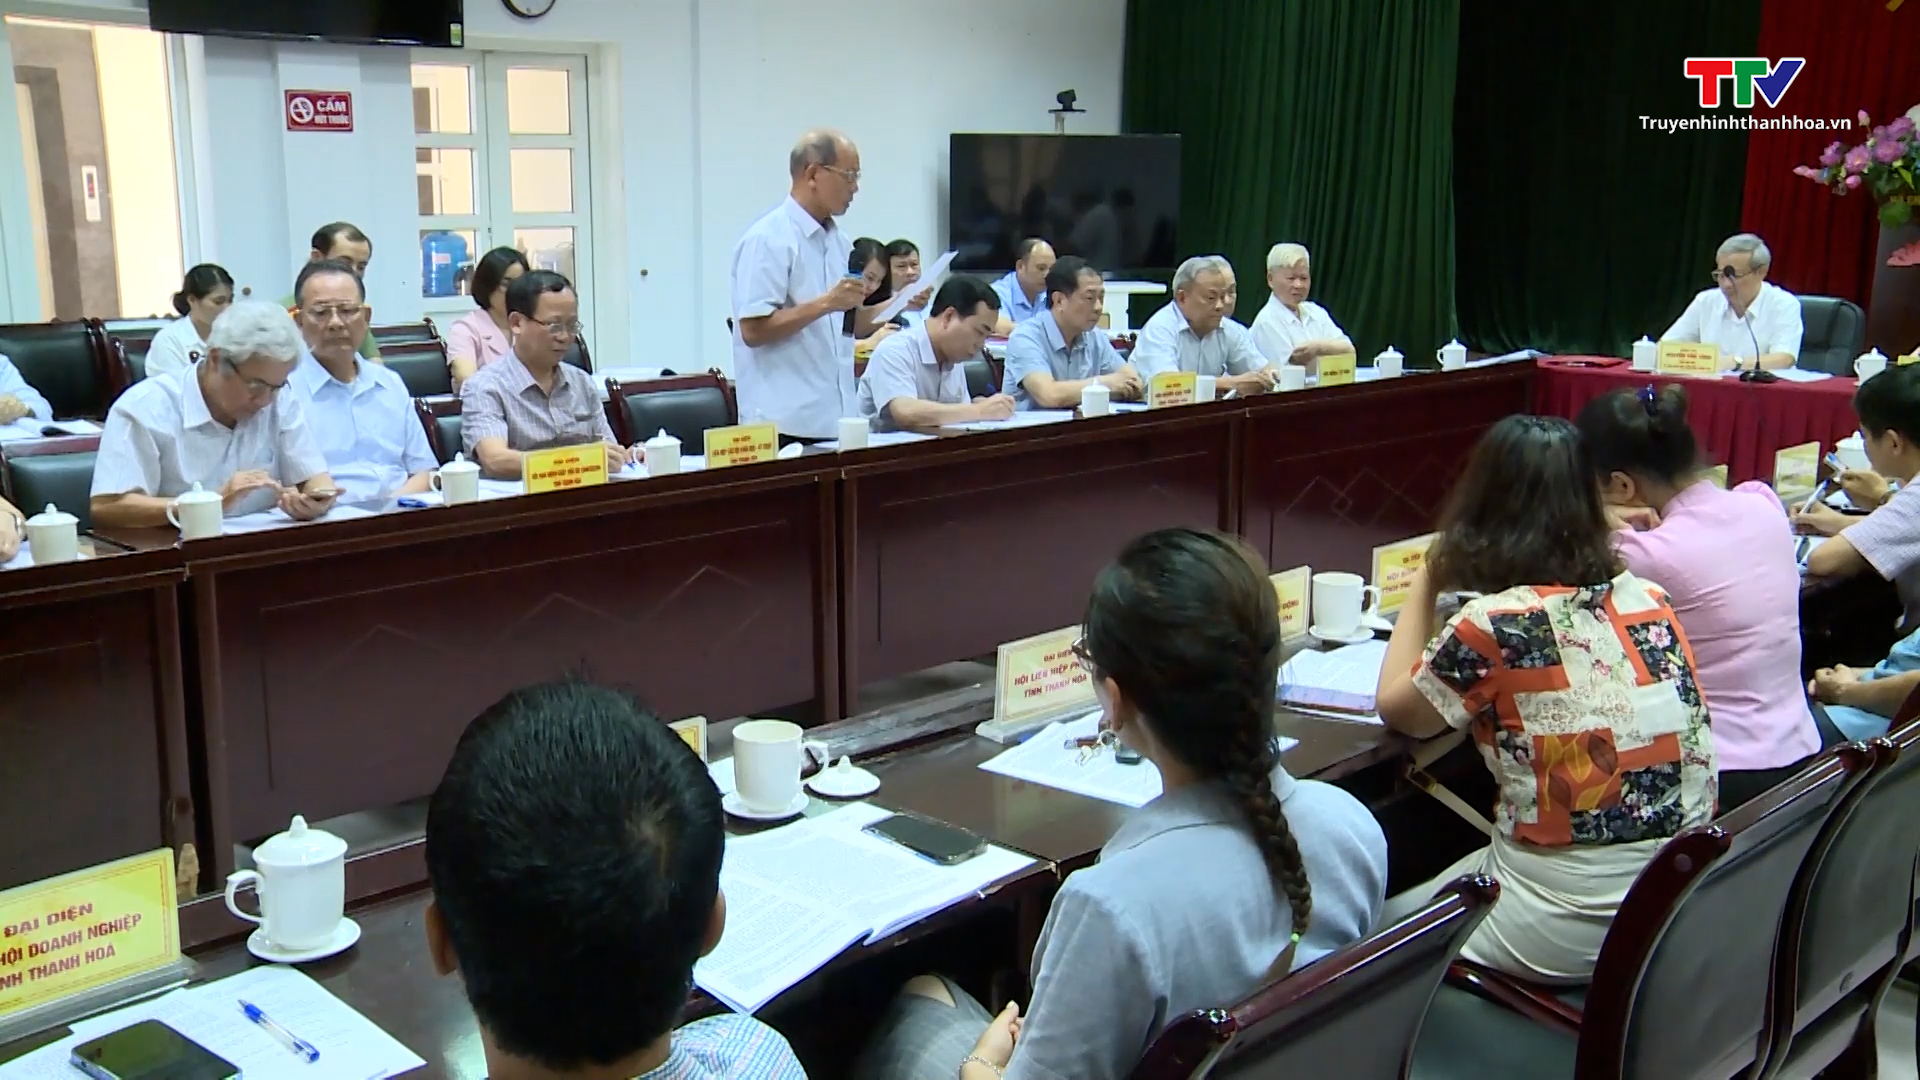 Hội nghị lấy ý kiến góp ý vào dự thảo thông báo của Ủy ban Mặt trận Tổ quốc Việt Nam tỉnh Thanh Hóa tại Kỳ họp thứ 14, Hội đồng nhân dân tỉnh khóa XVIII - Ảnh 4.